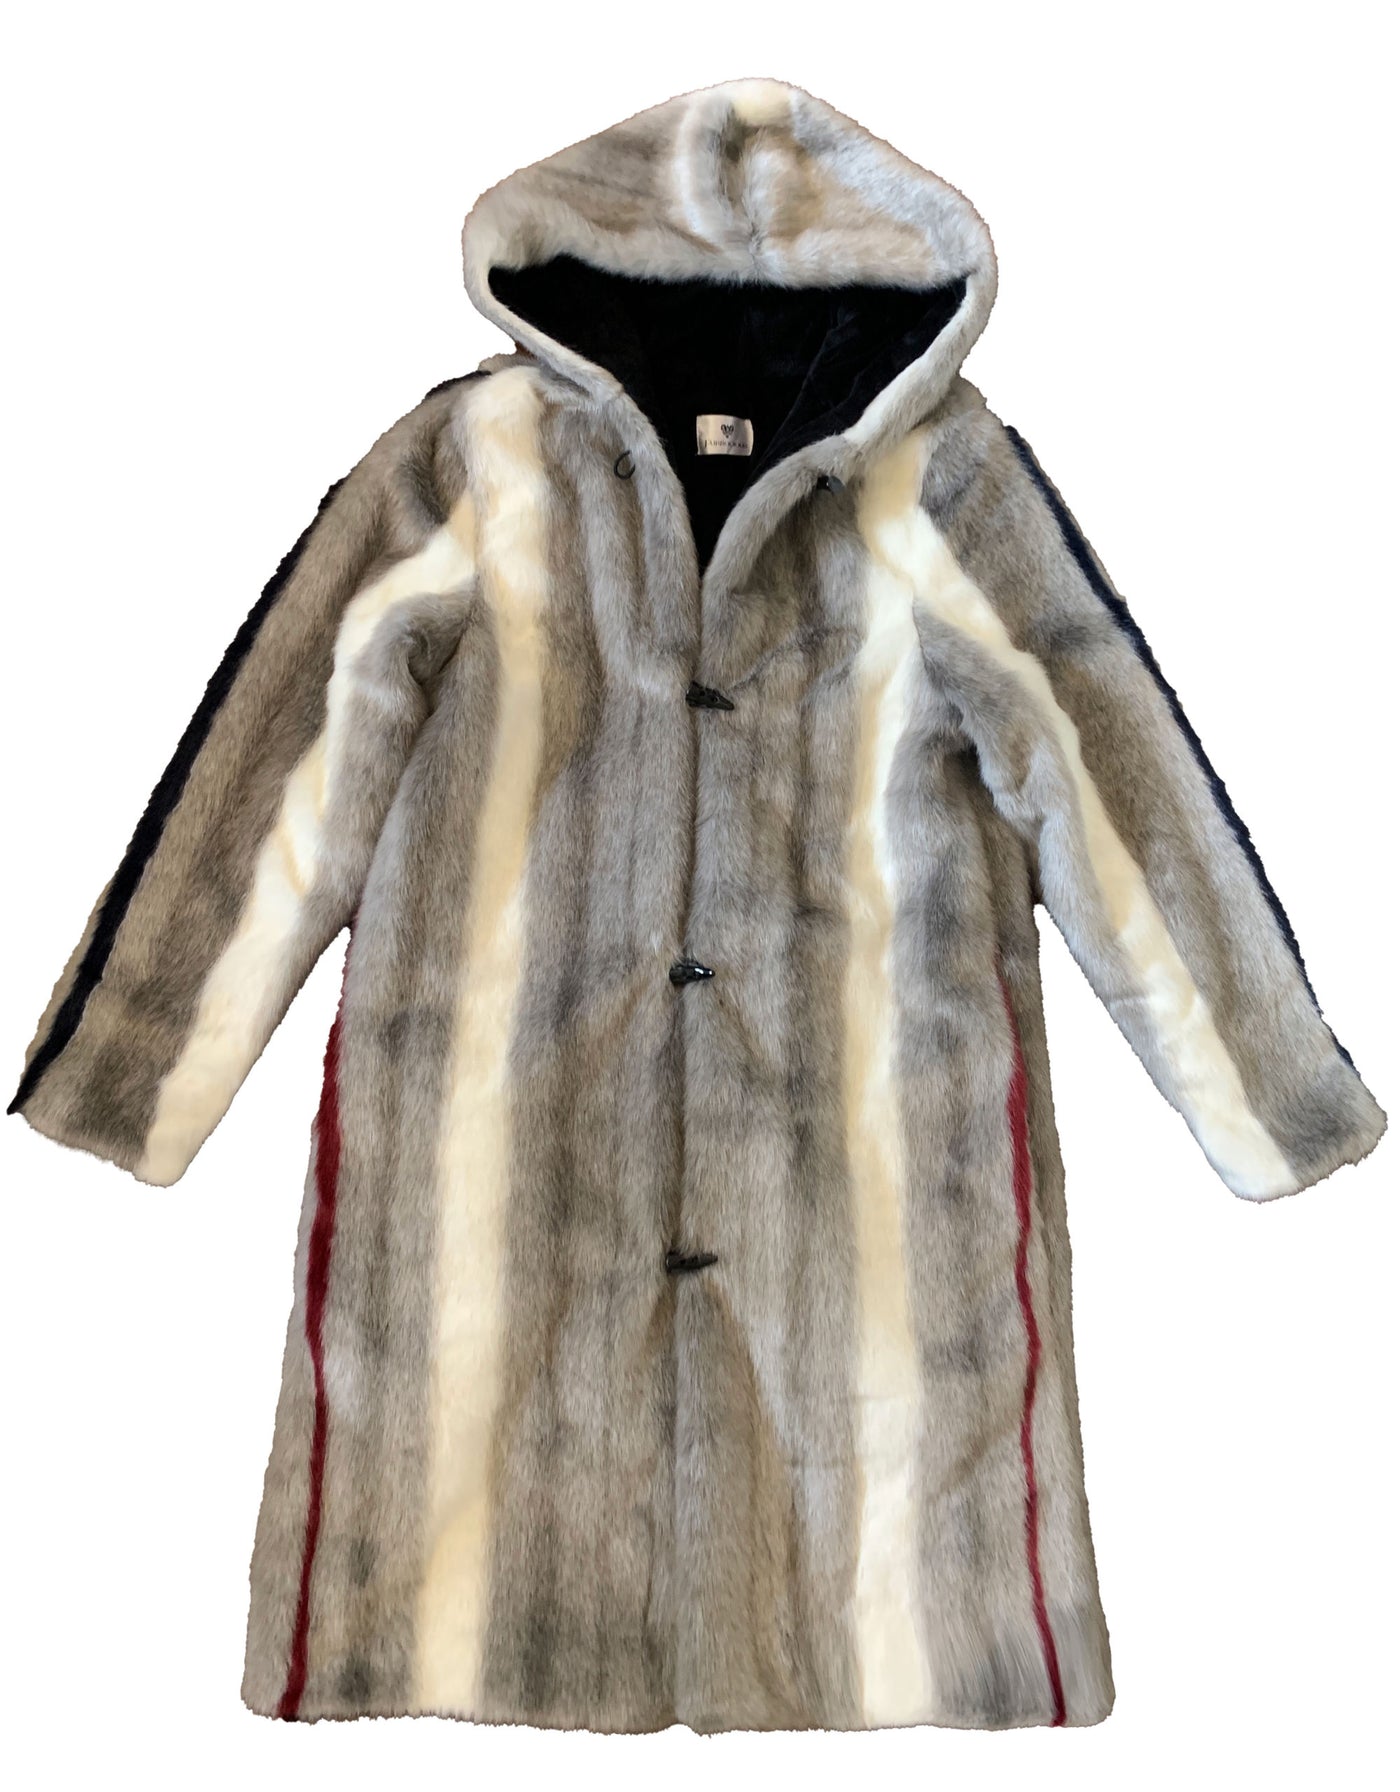 gray-white-navy-striped-long-fau-fur-coat